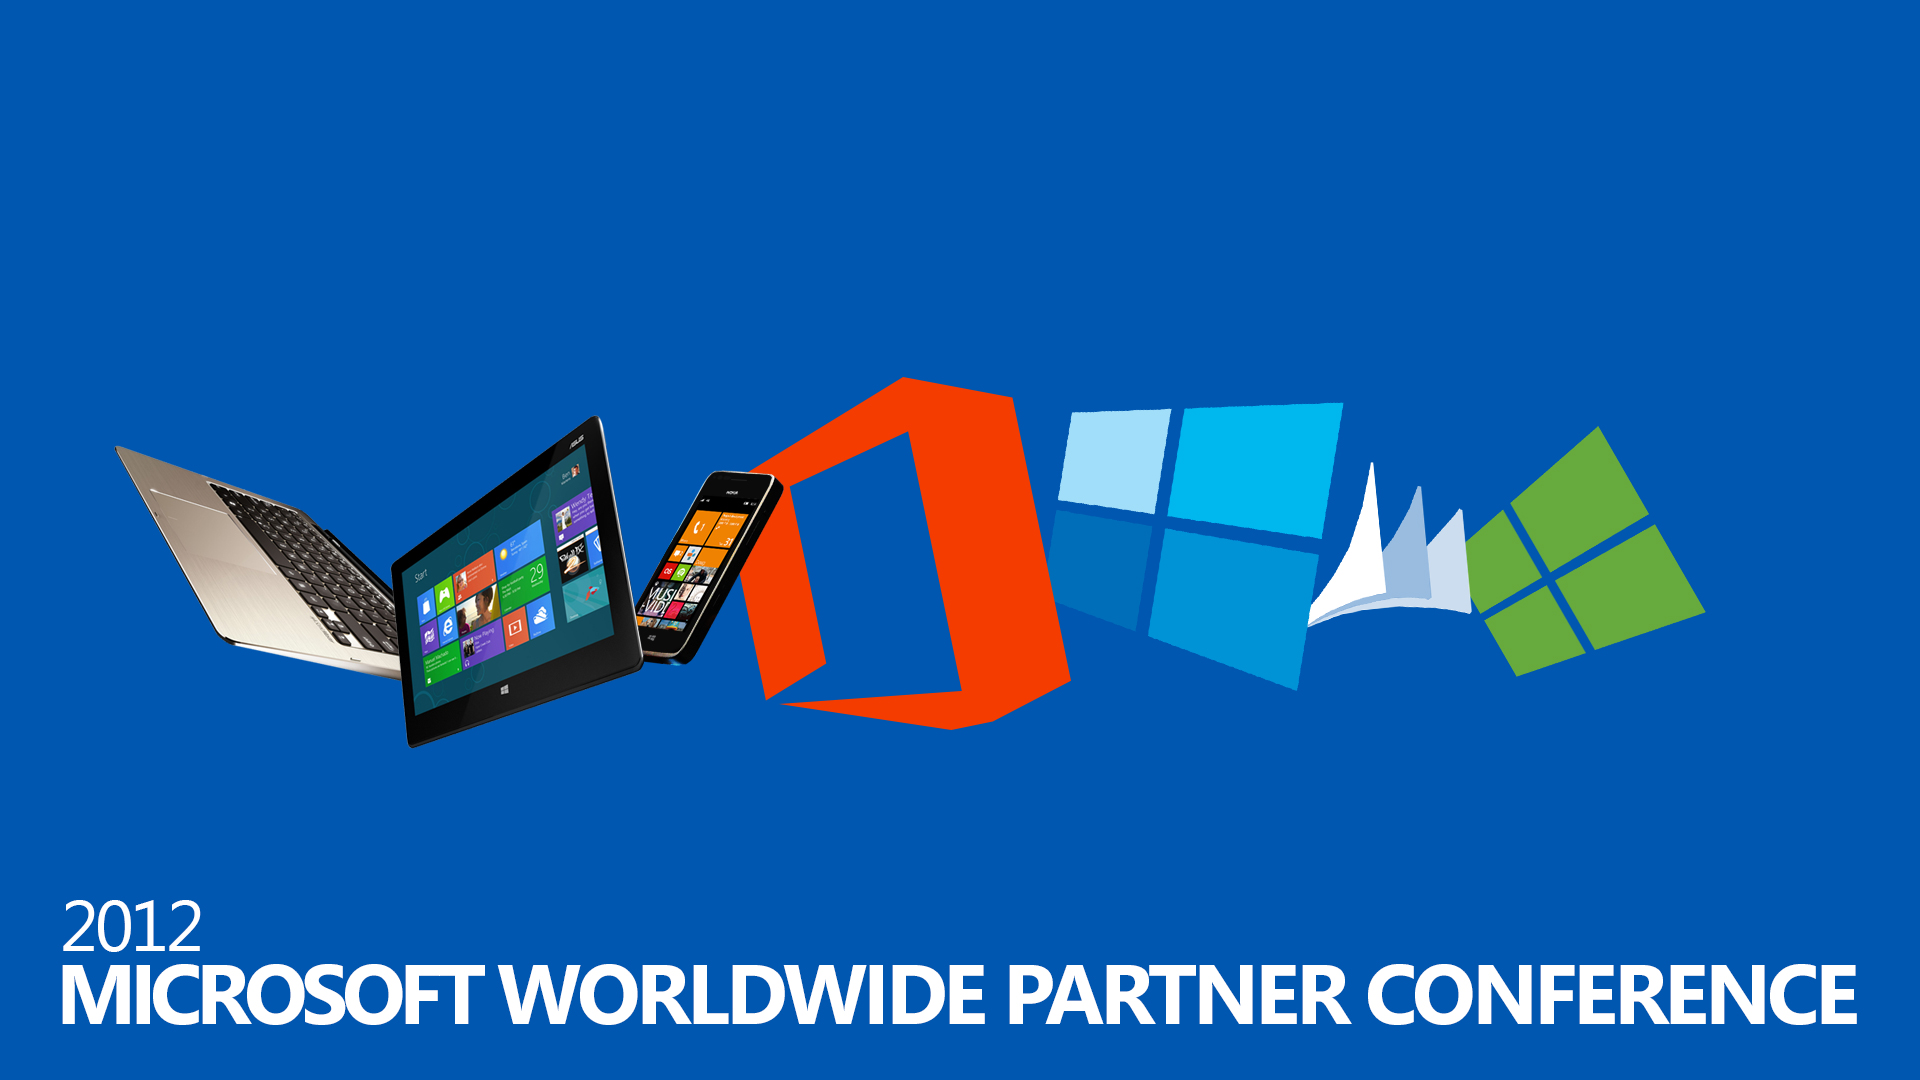 Microsoft Worldwide Partner Conference Wallpaper by MetroUI on DeviantArt